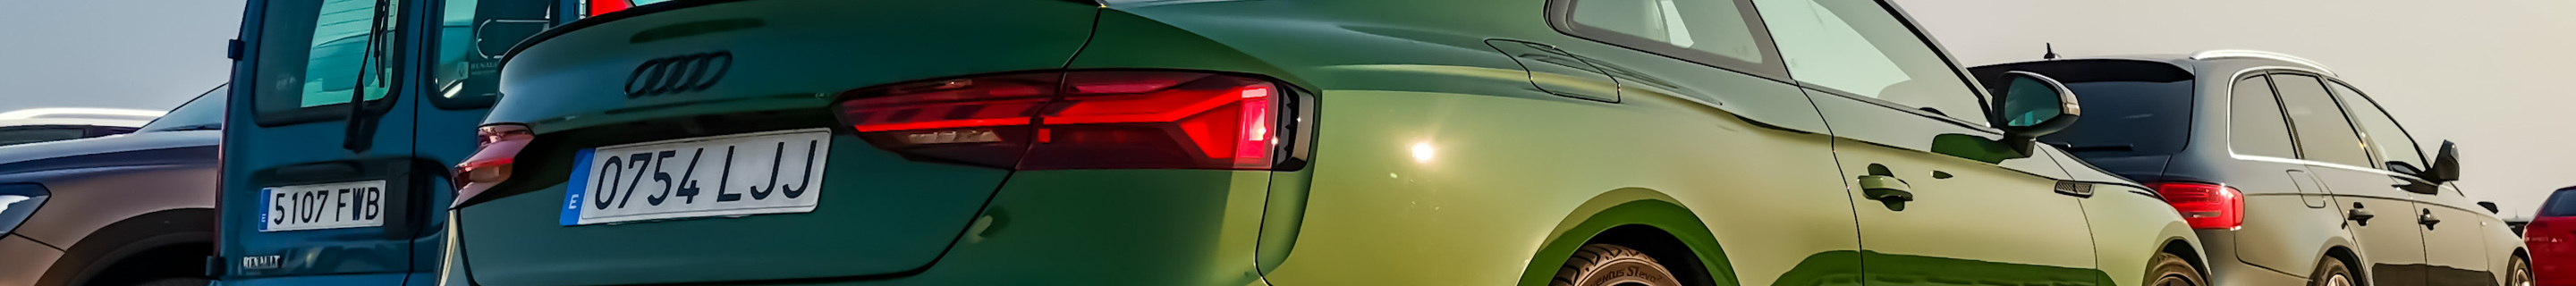 Audi RS5 B9 2021